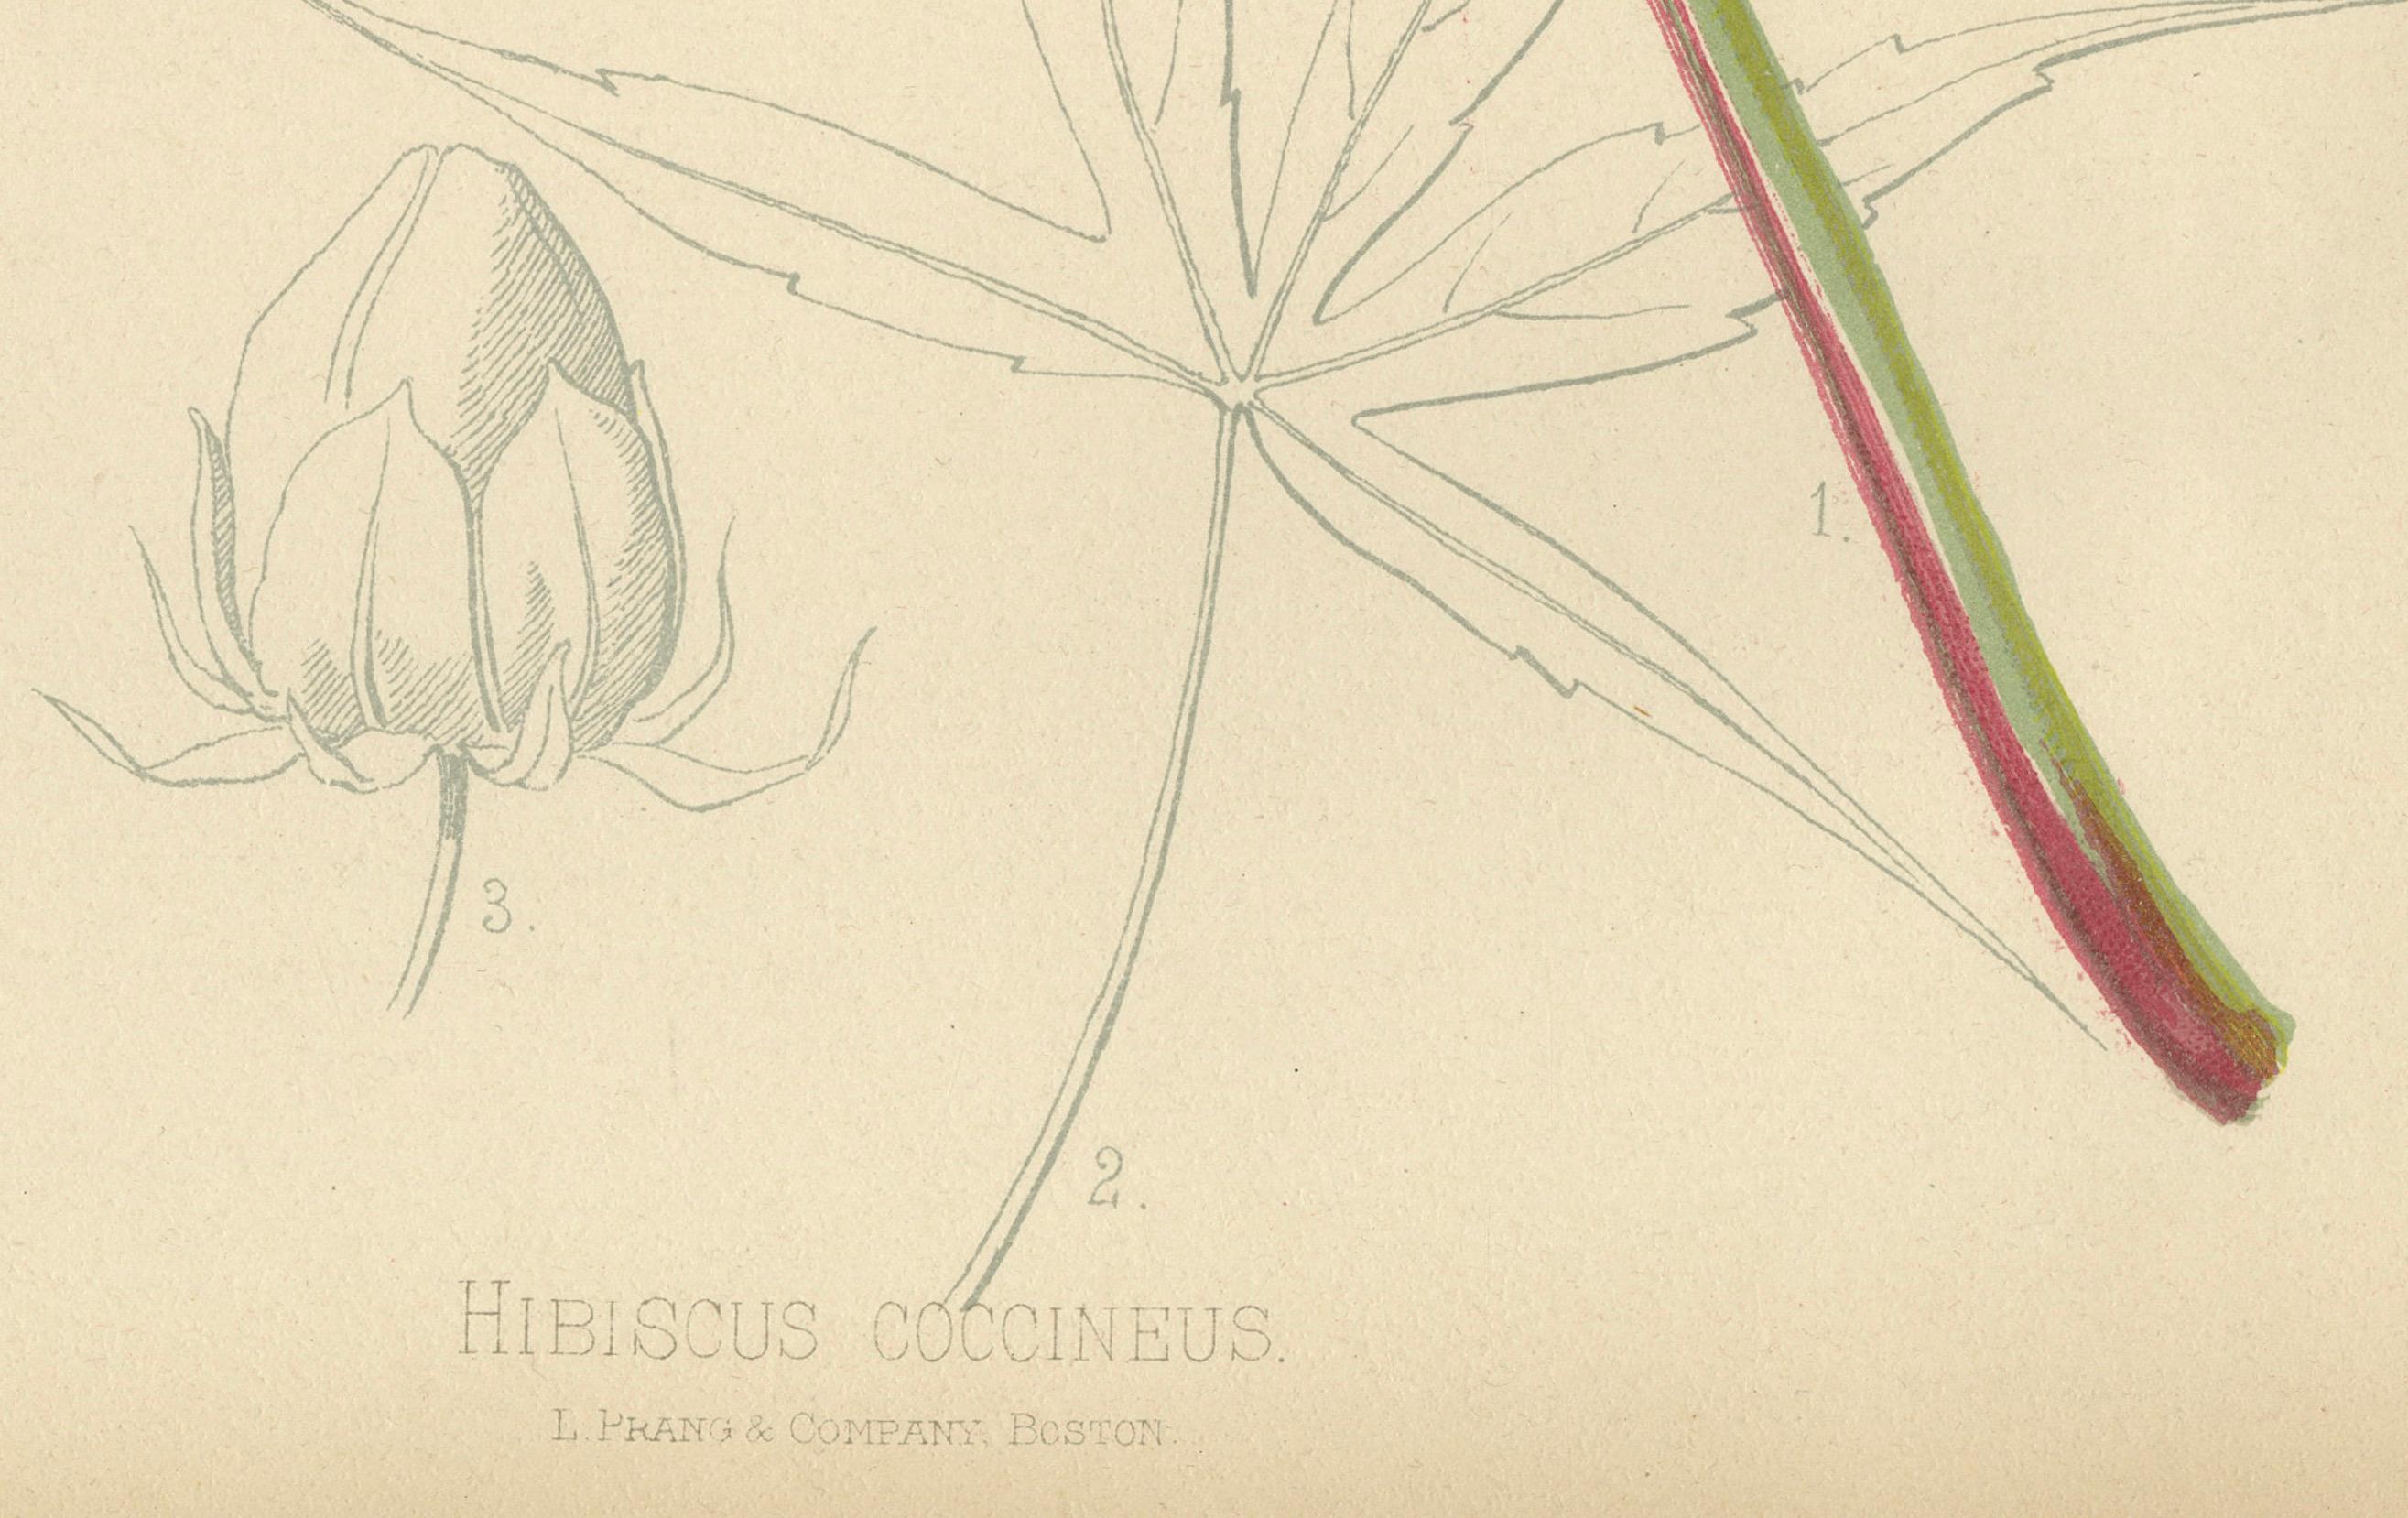 Das Bild ist eine kolorierte Chromolithographie des Hibiscus coccineus, allgemein bekannt als Amerikanischer Scharlachrosenmalz, aus dem Werk 'The Native Flowers and Ferns of the United States' von Thomas Meehan, veröffentlicht 1879 (Band 2).

Die